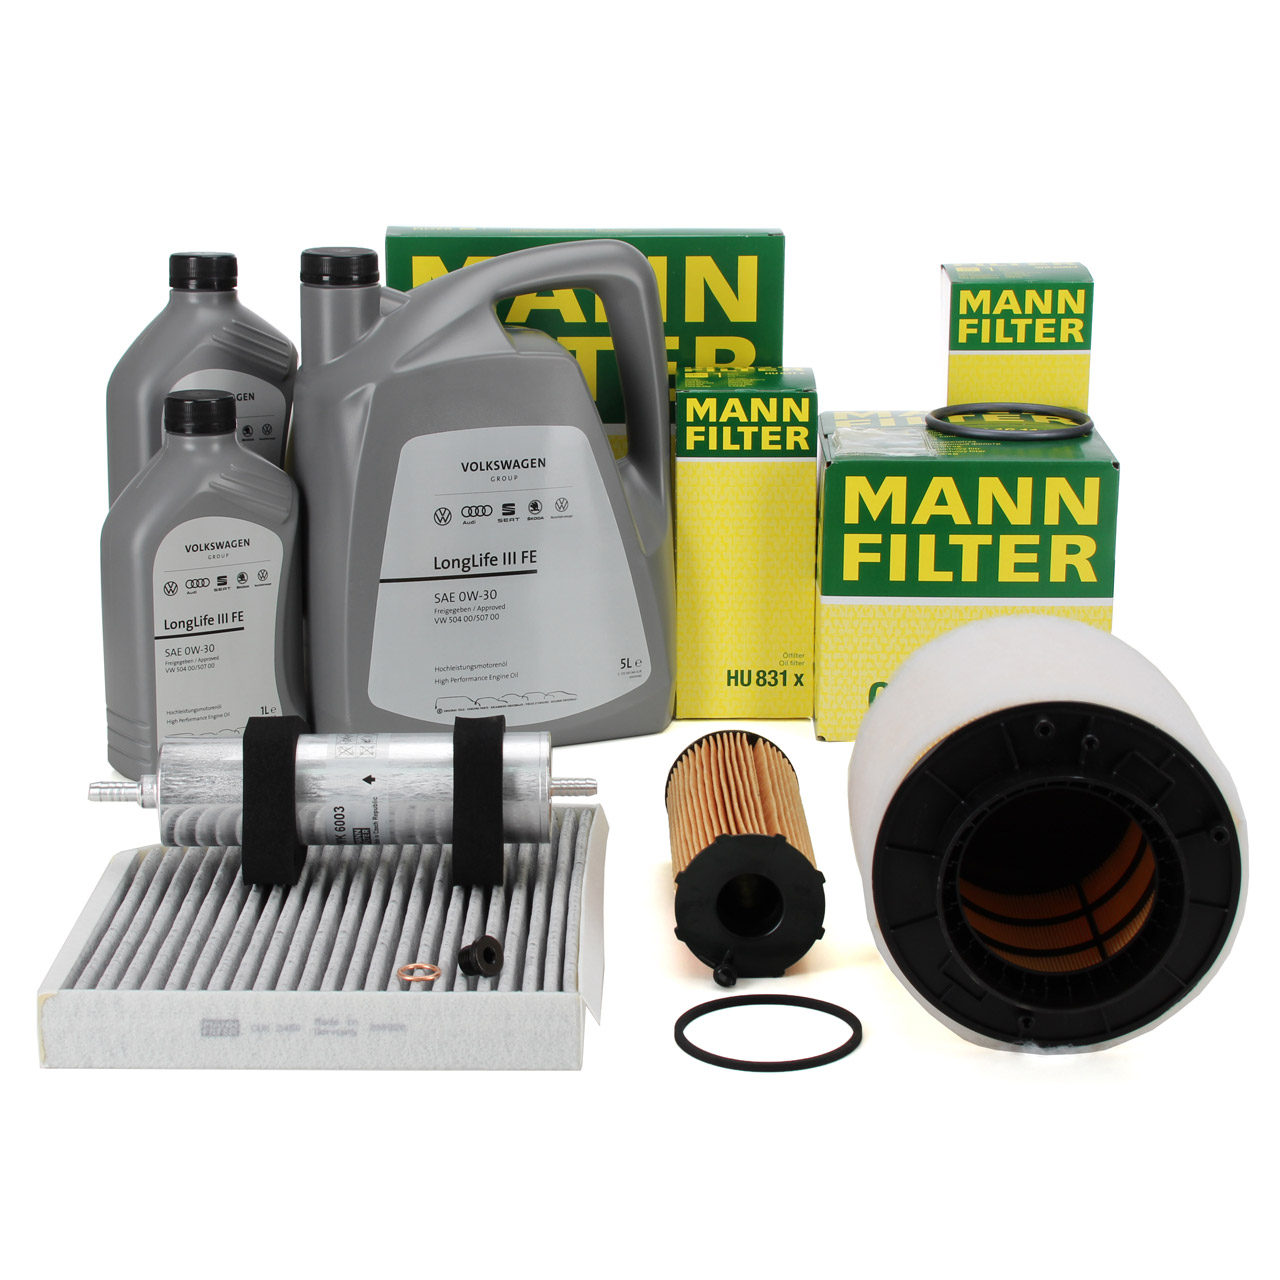 MANN Filterset 4-tlg + 7L ORIGINAL 0W30 Motoröl AUDI A4 B8 A5 Q5 8RB  2.7/3.0 TDI bis Fgst.